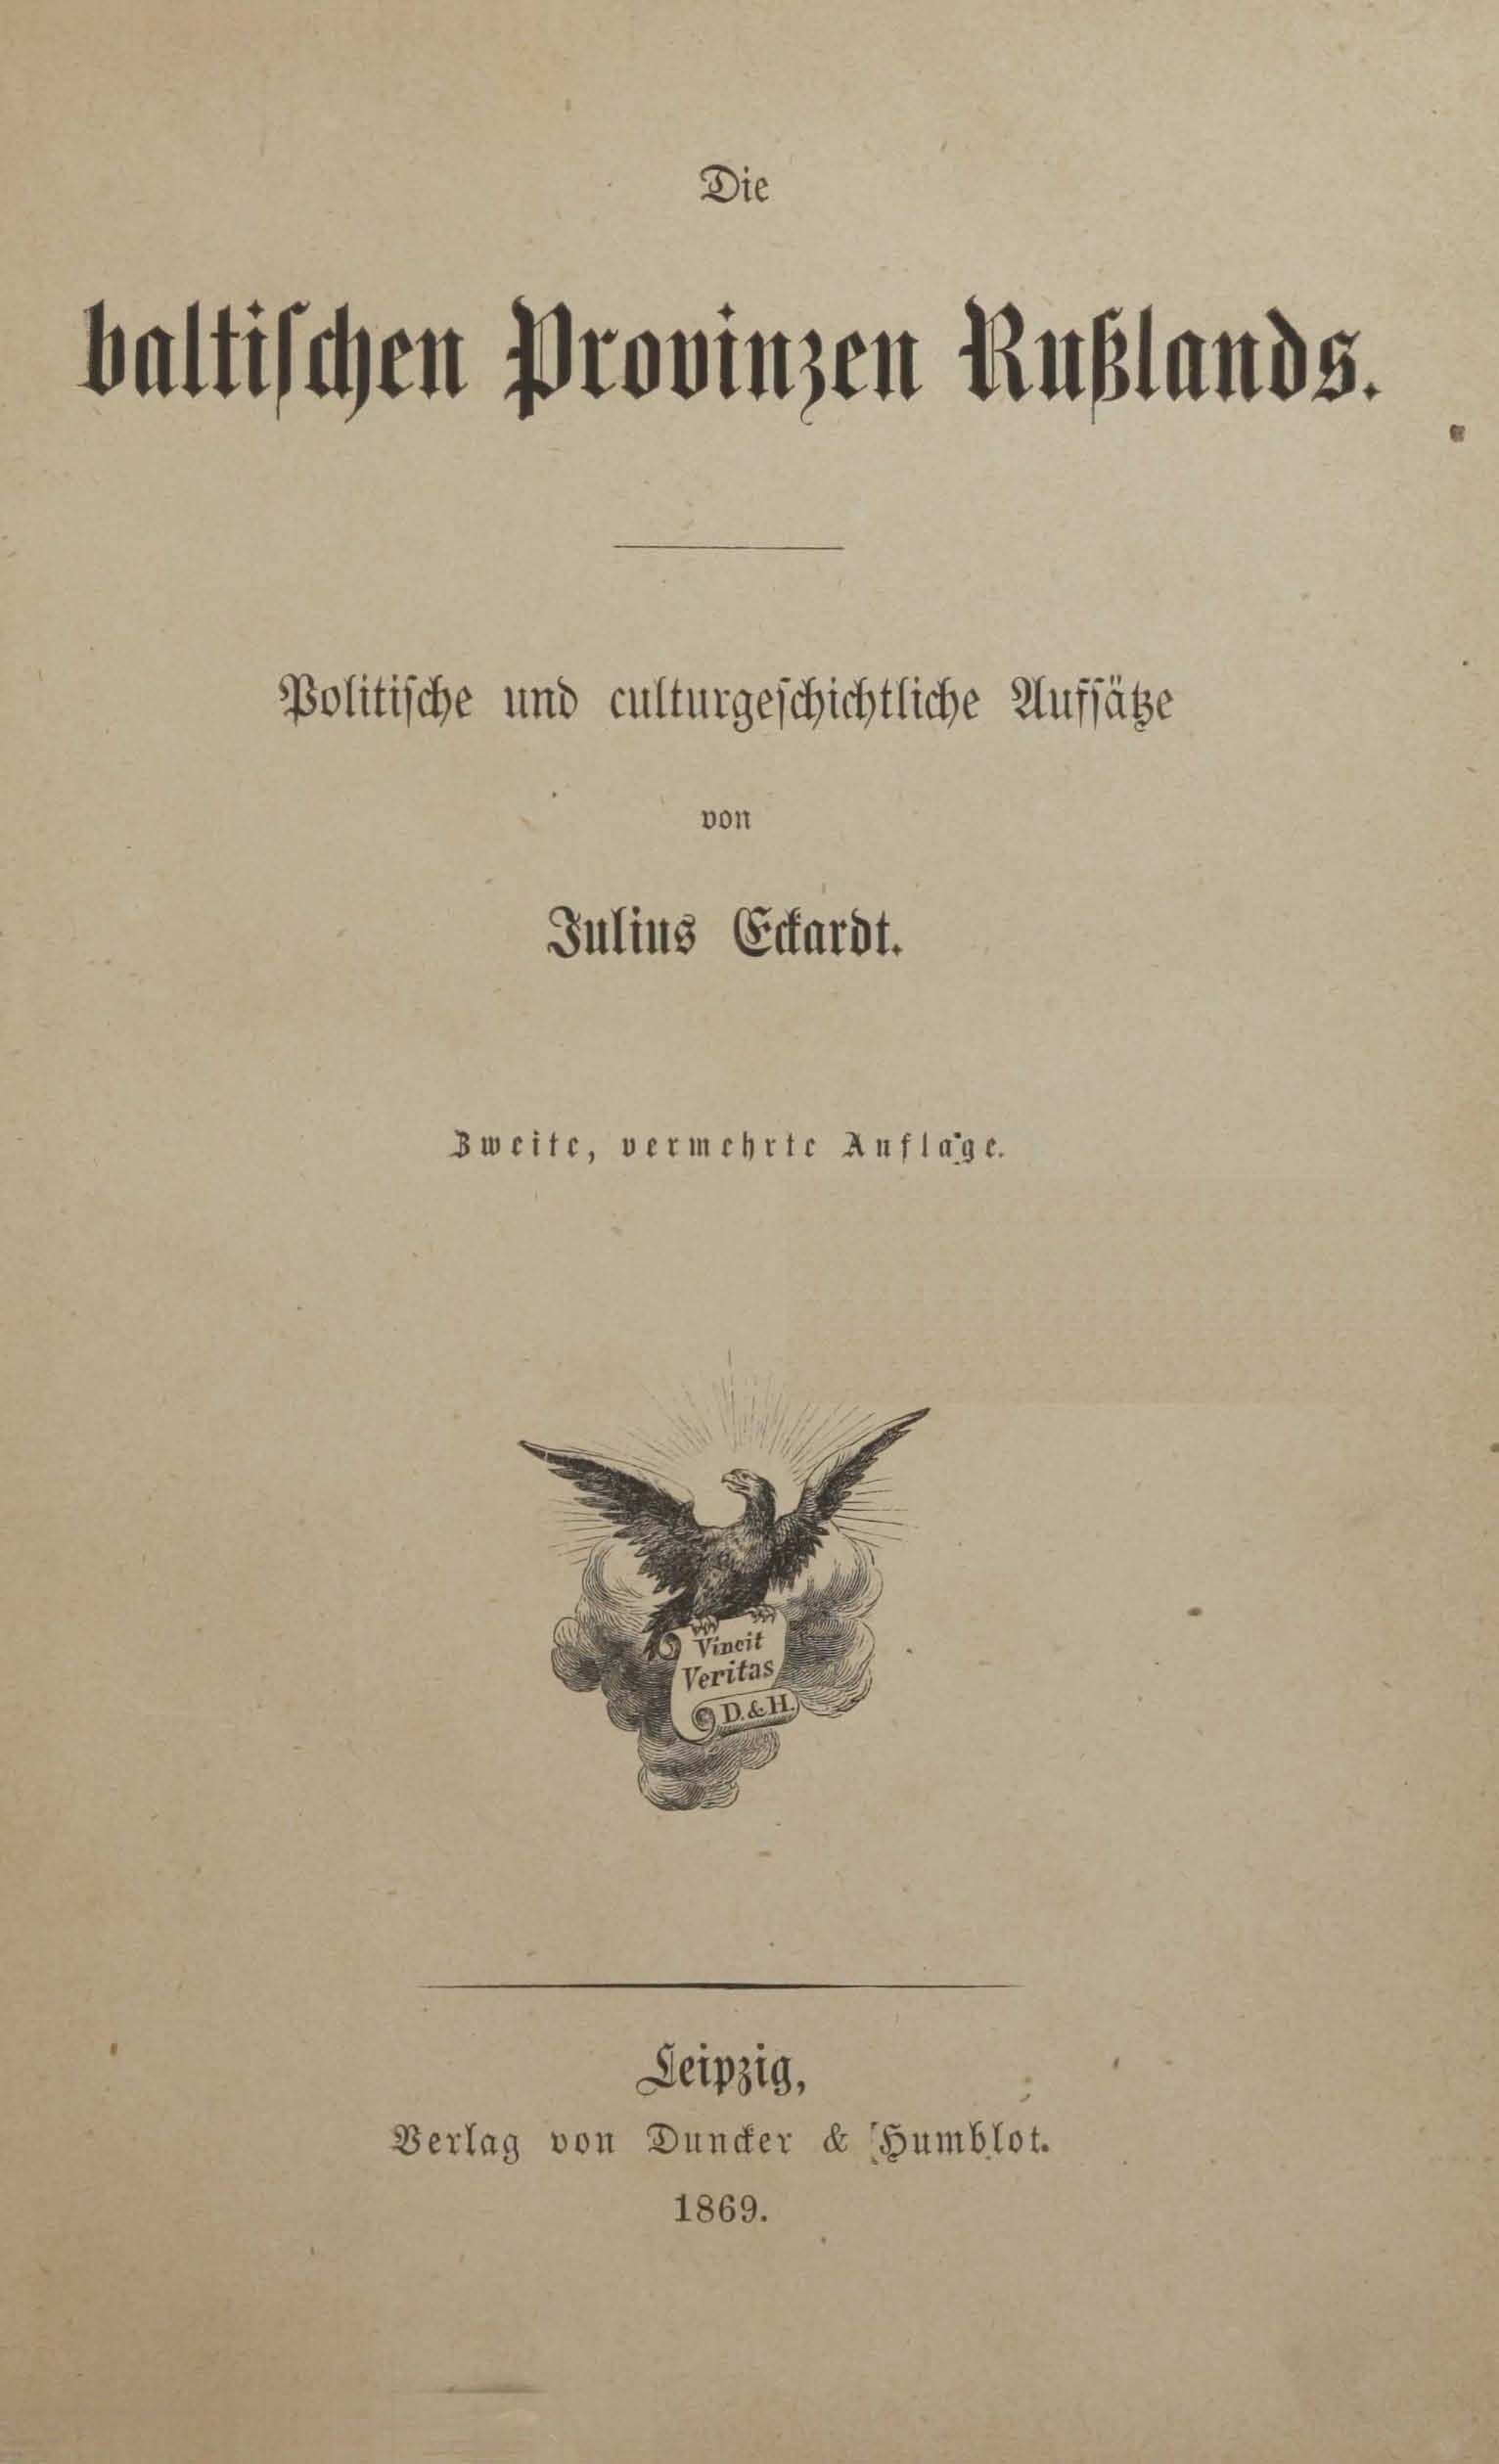 Die baltischen Provinzen Russlands (1869) | 2. Title page